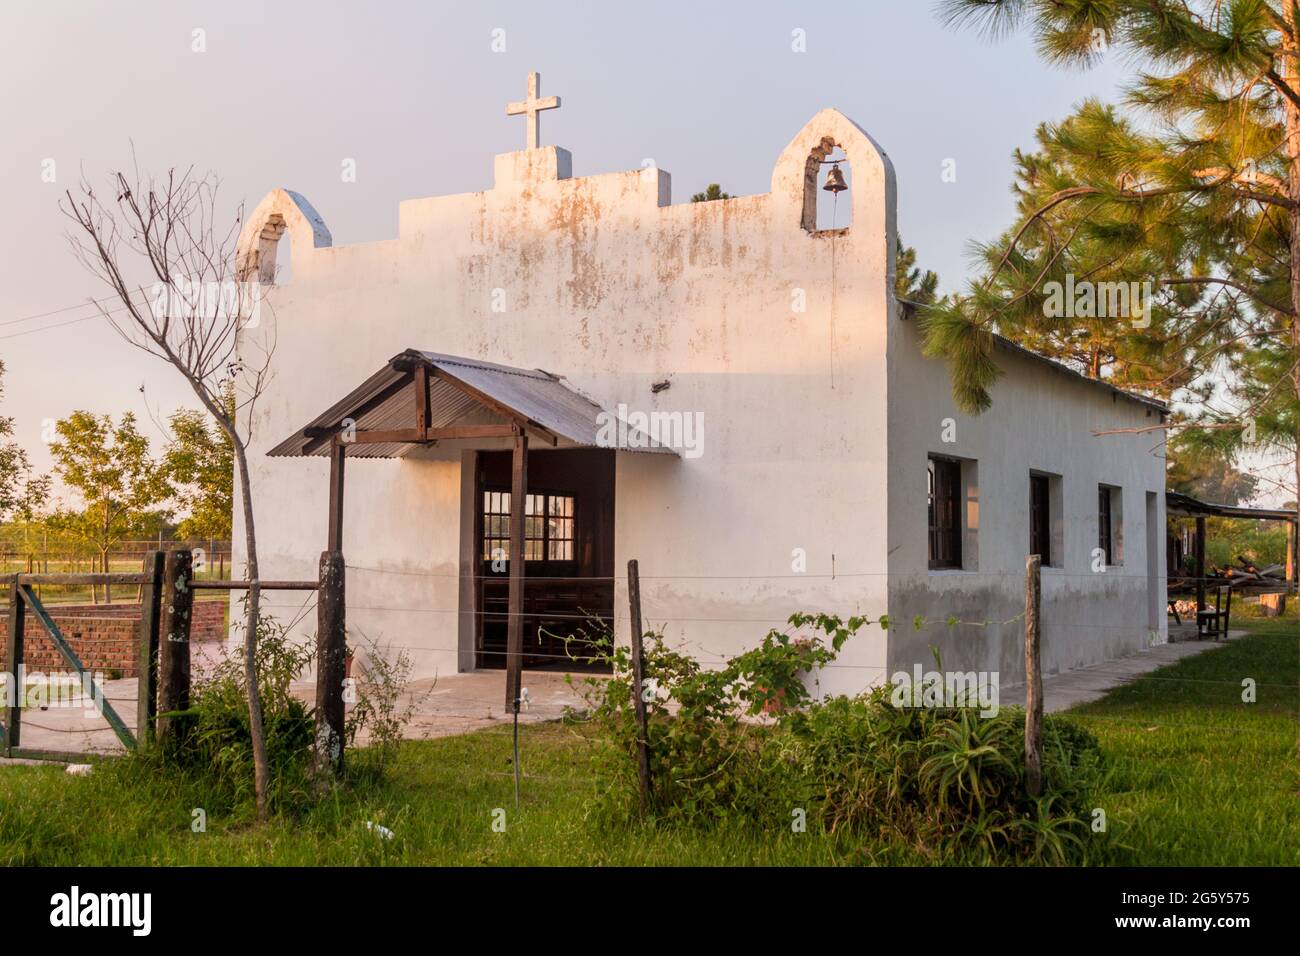 Church in Colonia Carlos Pellegrini in Esteros del Ibera, Argentina Stock Photo